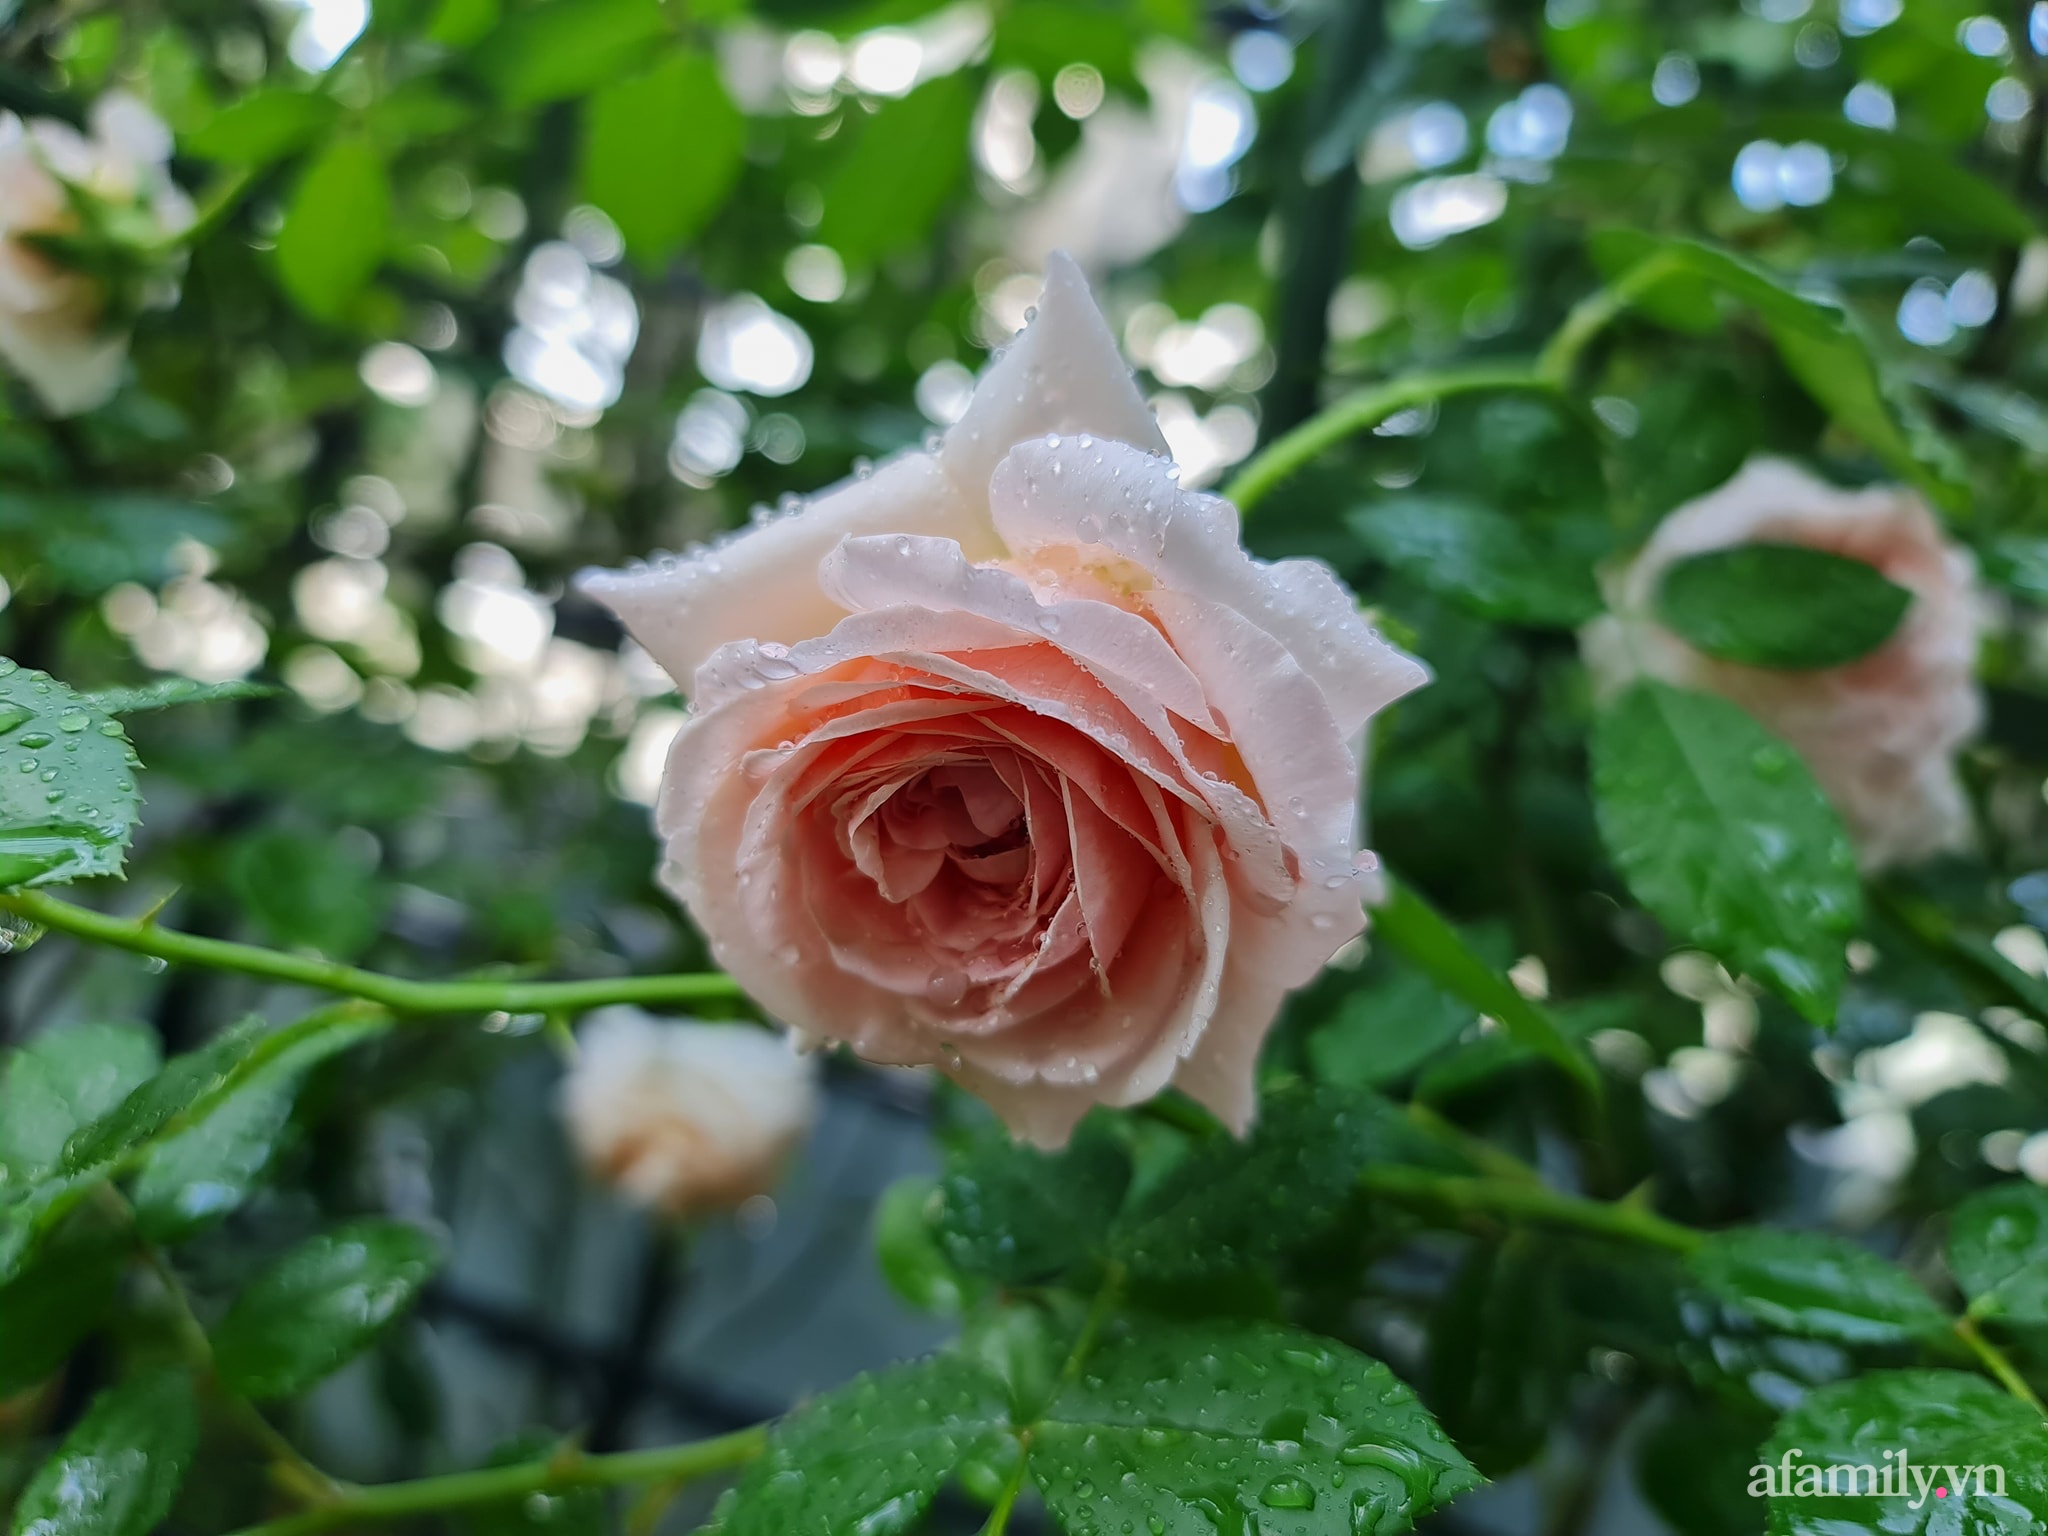 Đắm say trước vẻ đẹp ngọt lịm tim của vườn hồng rực rỡ trên sân thượng ở Bình Dương - Ảnh 20.